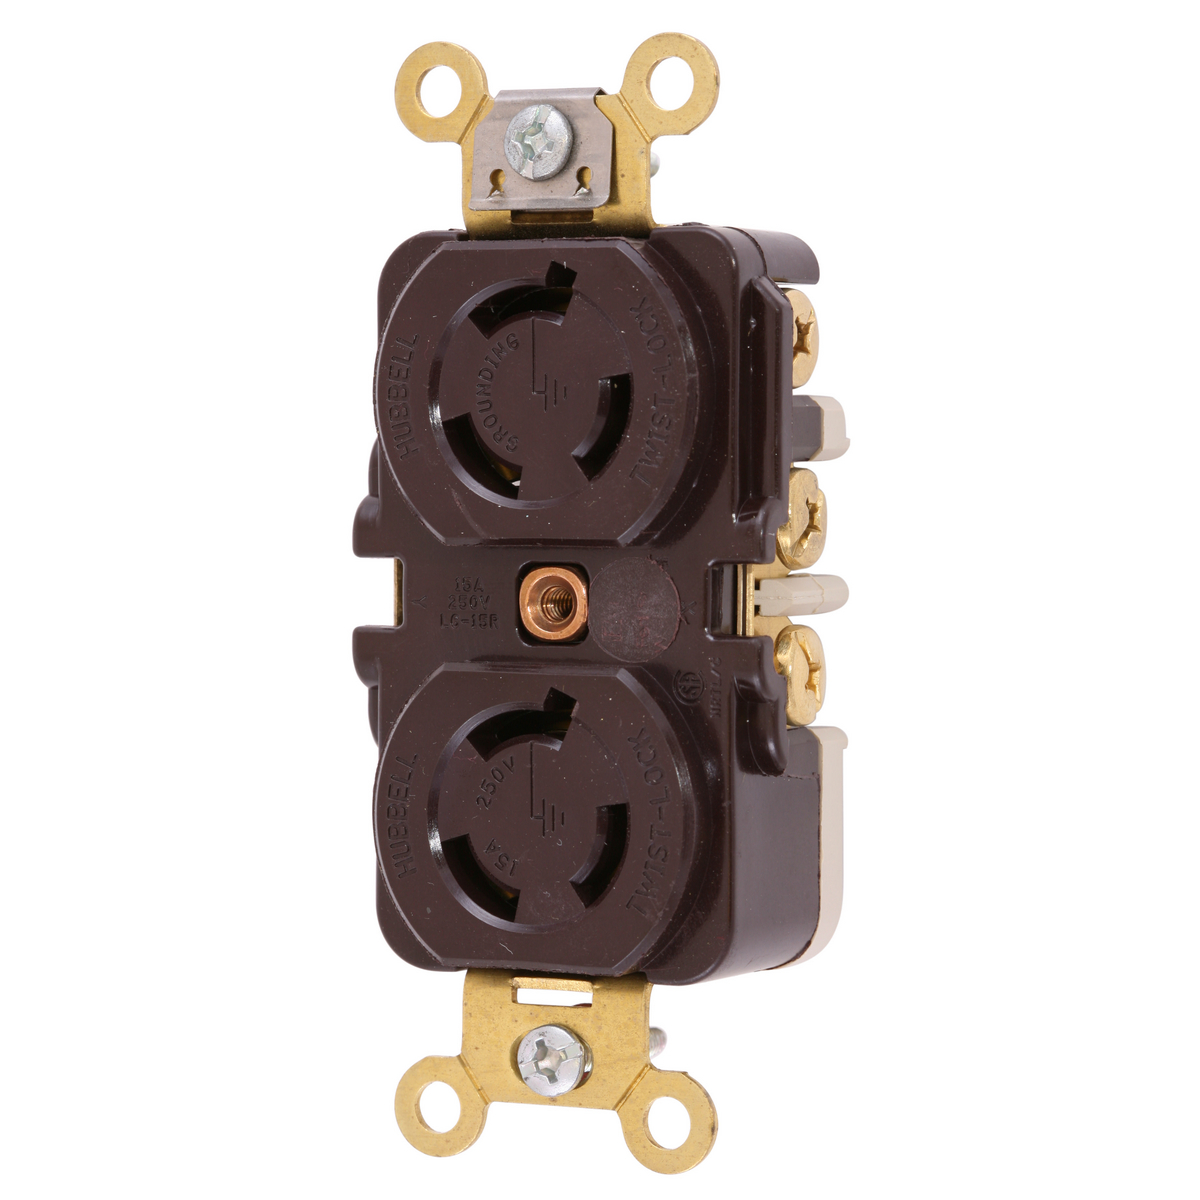 Hubbell Twist-Lock Single Recept Cat #HBL4560 15A 250V 2 Pole 3 Wire Lot/3 NIB 